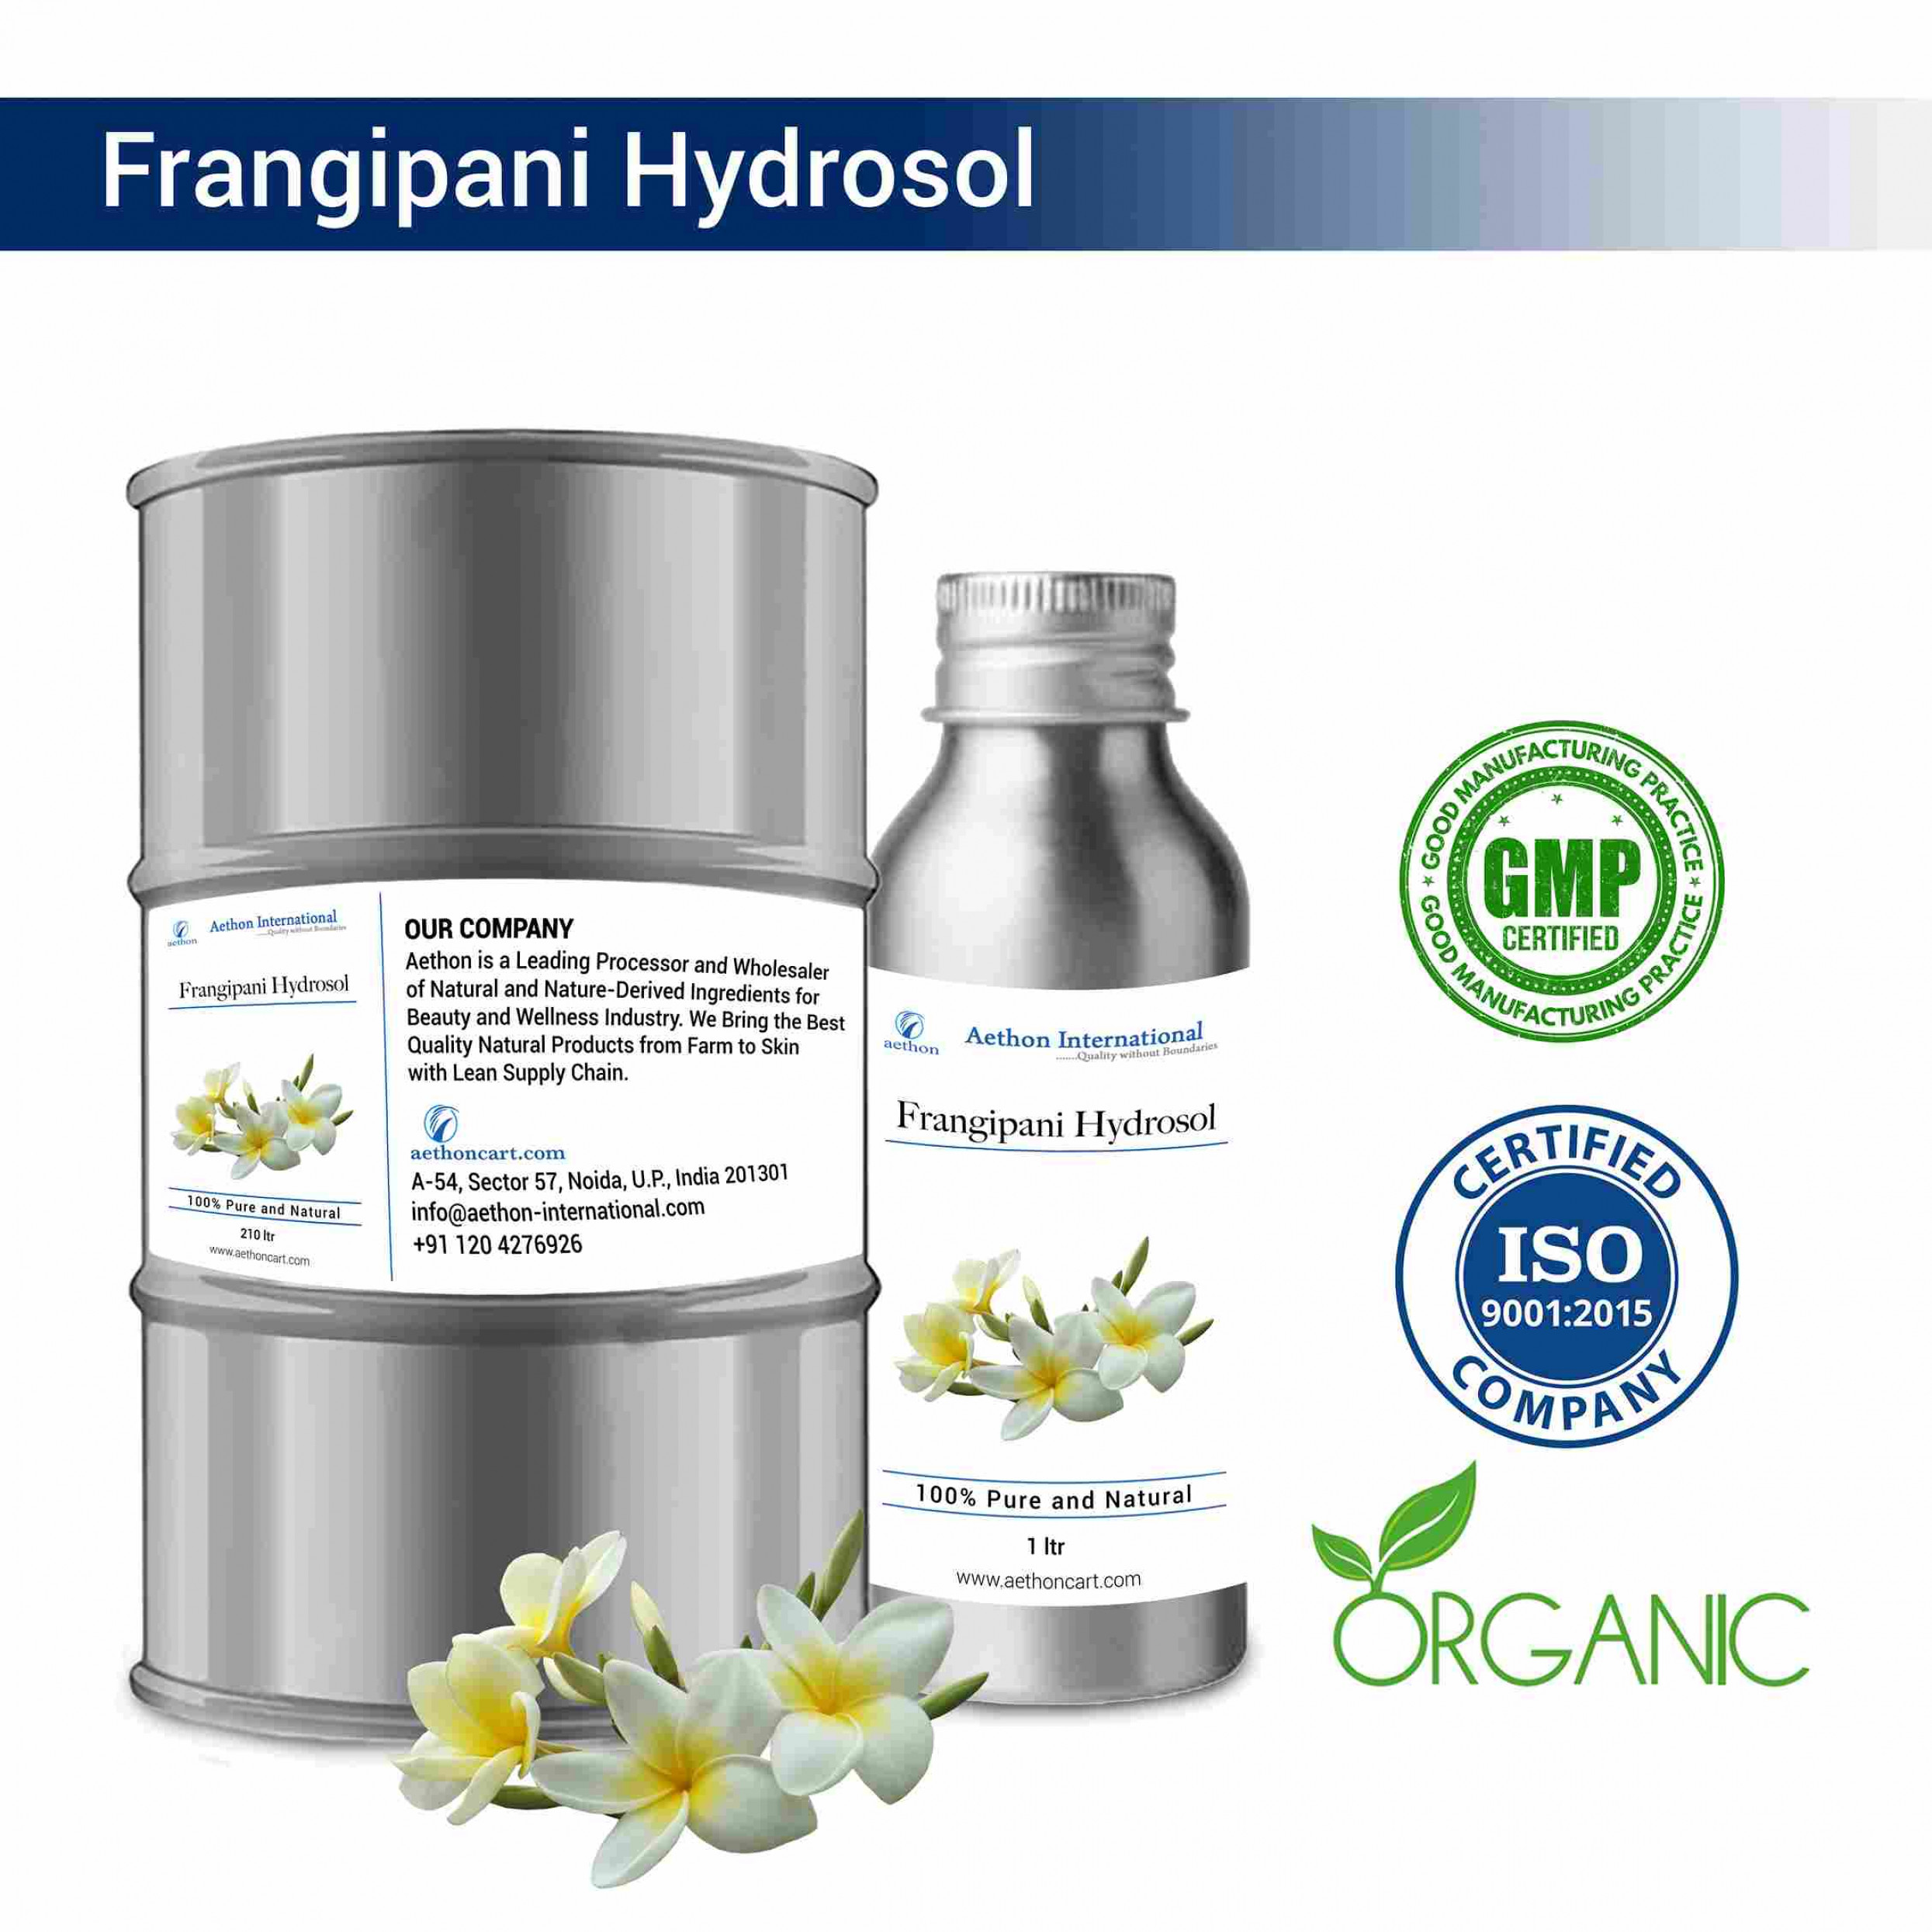 Frangipani Hydrosol